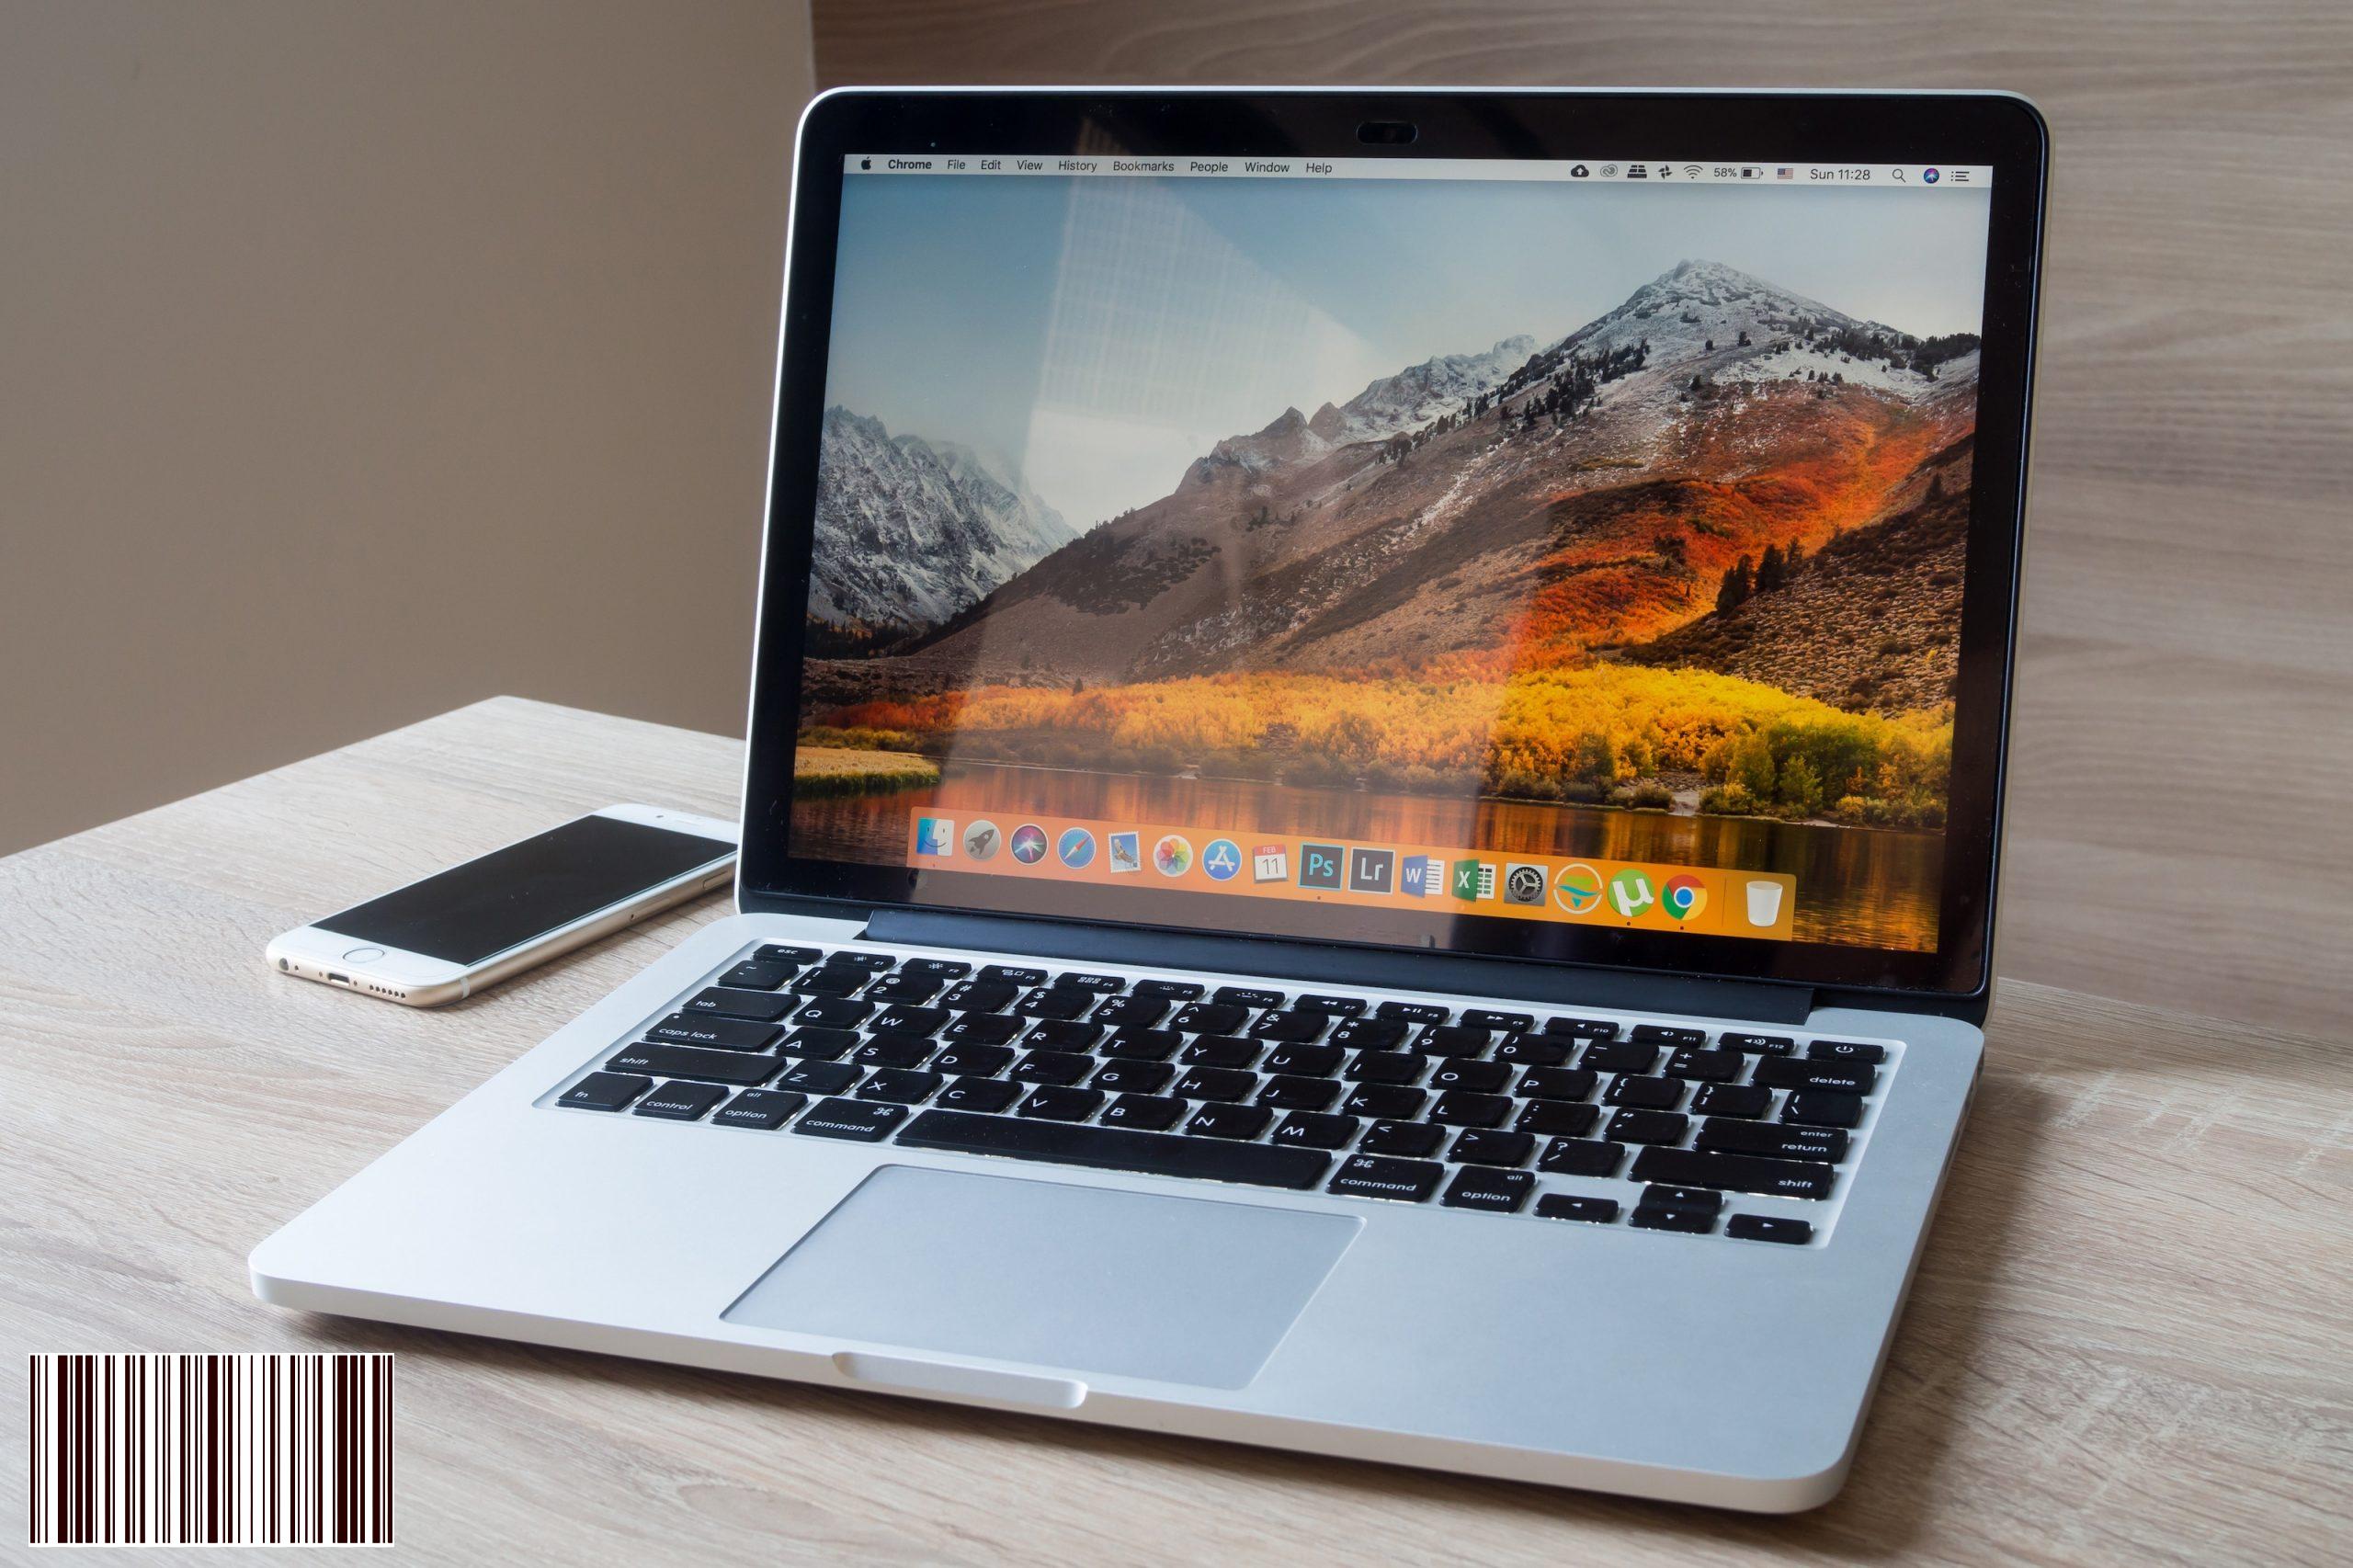 يُعلم التنبيه الجديد لنظام macOS High Sierra المستخدمين بشأن الانتقال من 64 بت